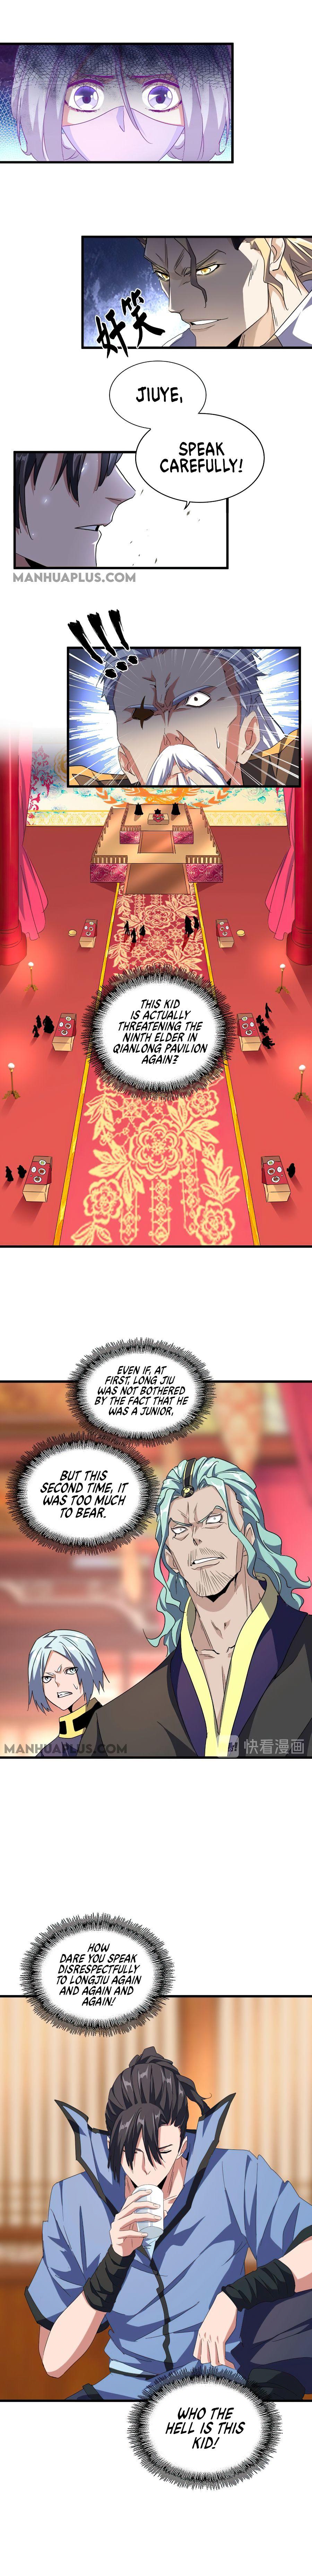 Magic Emperor Chapter 145 page 7 - Mangakakalot